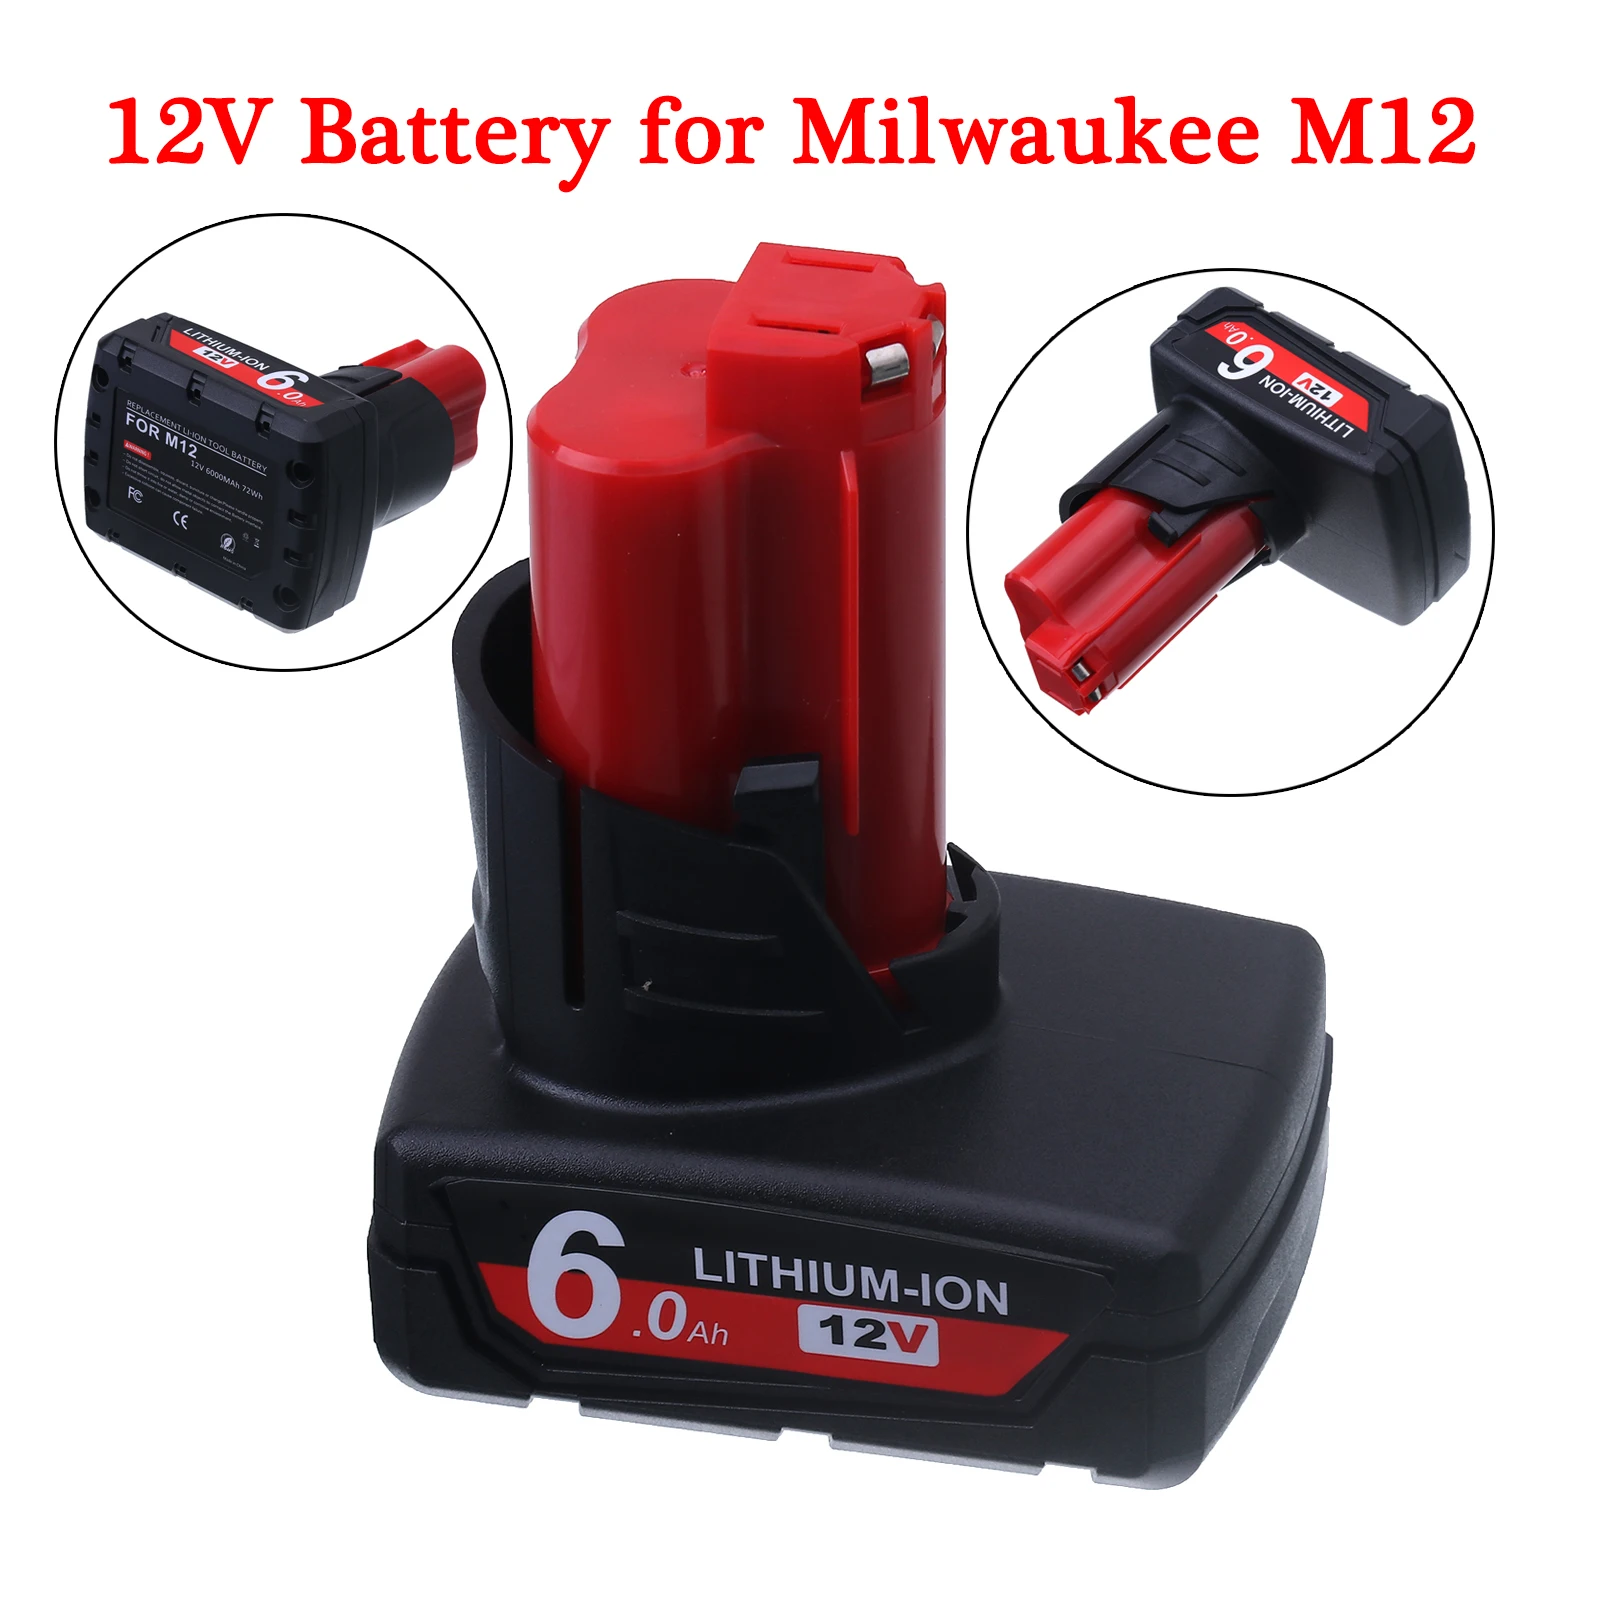 

Аккумулятор 12 В для электроинструмента Milwaukee M12 C12 XC 48-11-2440 48-11-2402 48-11-2411 48-11-2401 48-11-12 В Ач литий-ионный сменный аккумулятор